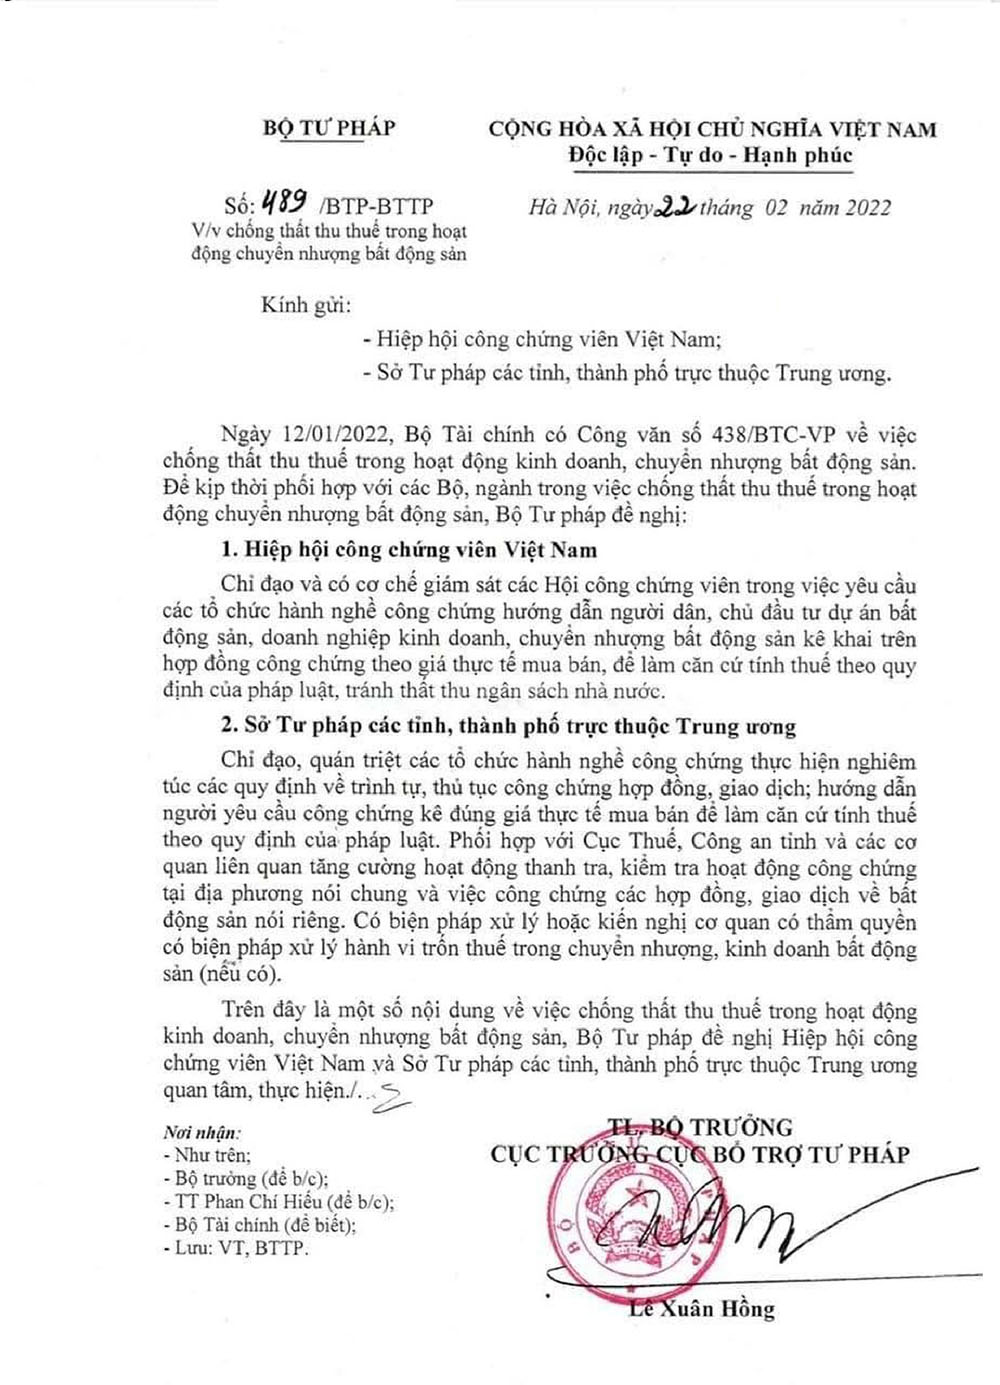 Công văn số 489 gửi Sở Tư pháp các tỉnh, thành phố trực thuộc Trung ương và Hiệp hội Công chứng viên Việt Nam